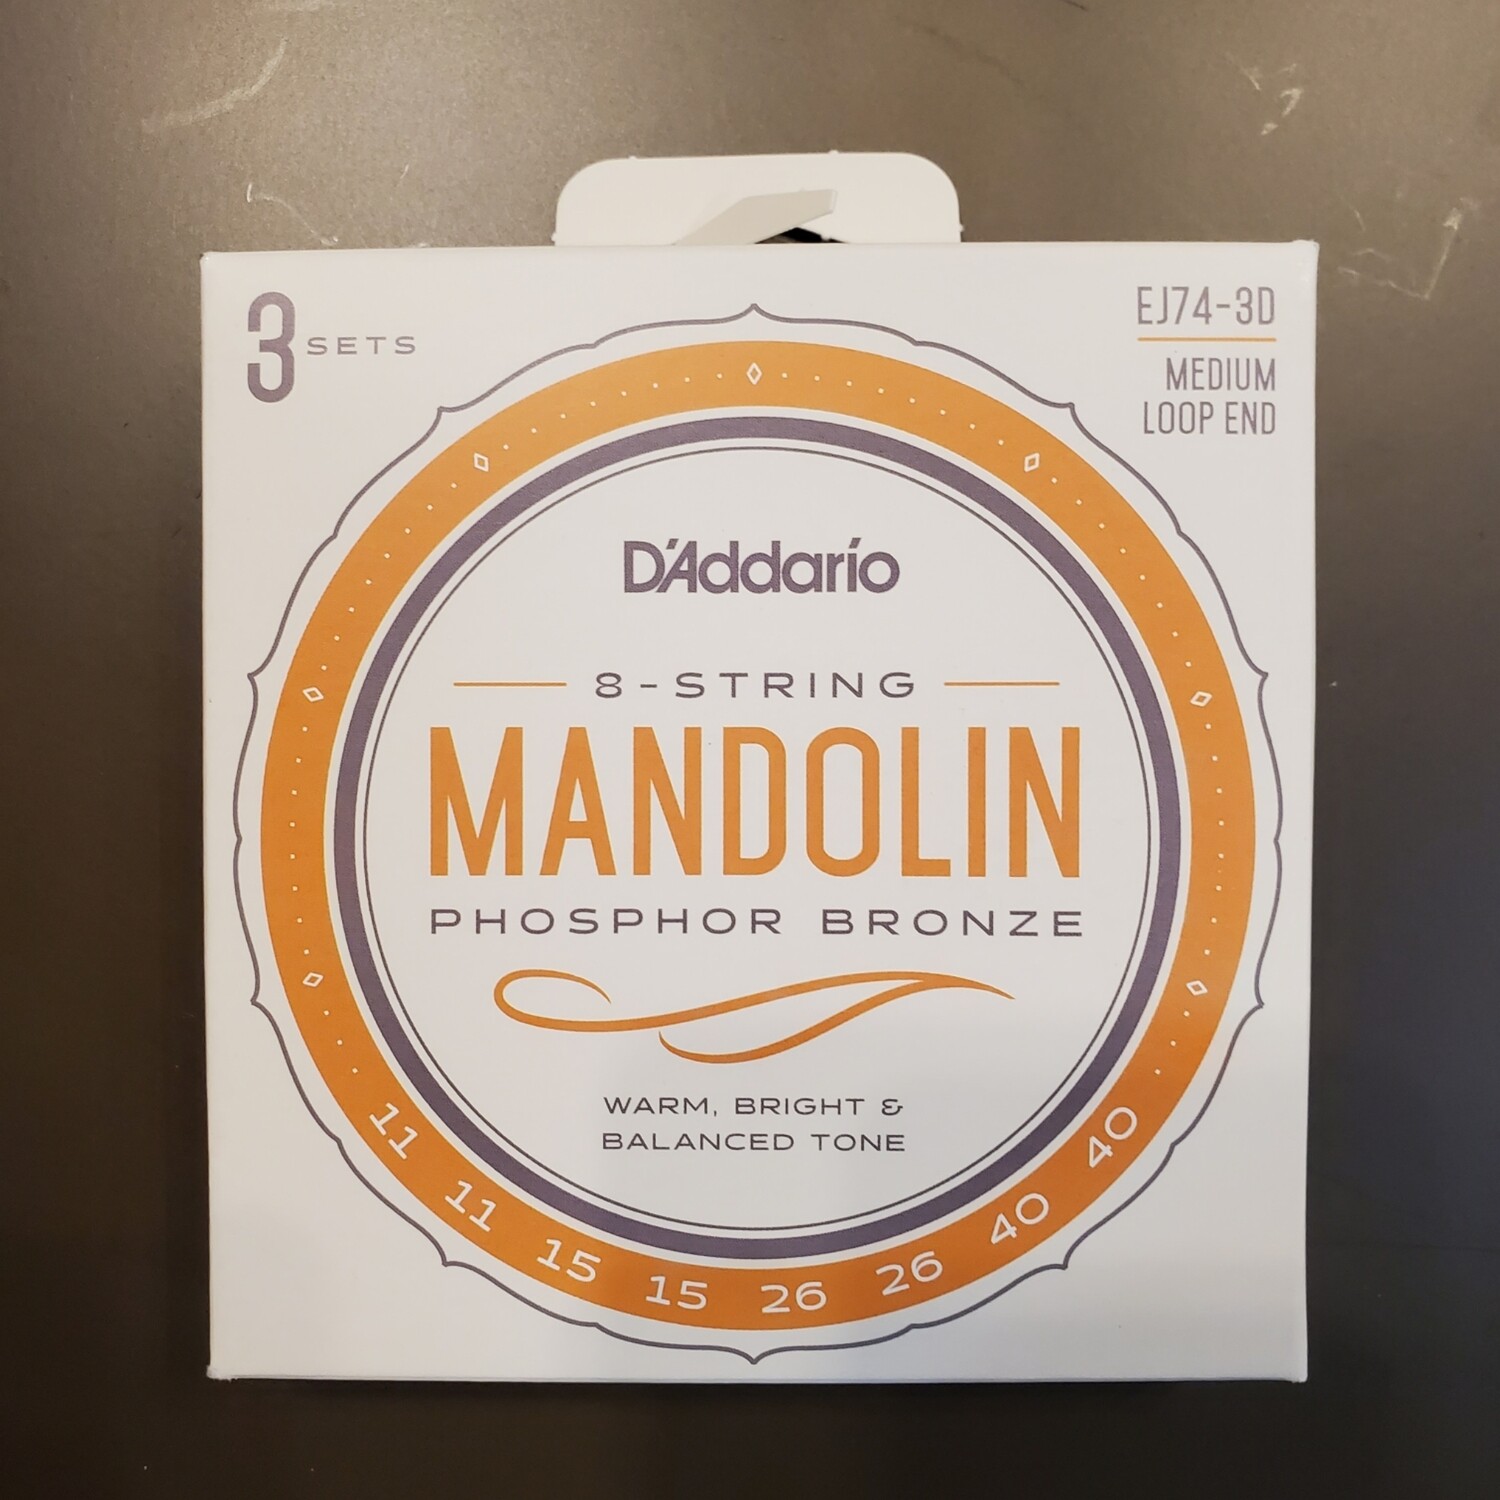 D'Addario EJ74 Mandolin Medium Phosphor Bronze Loop End Strings